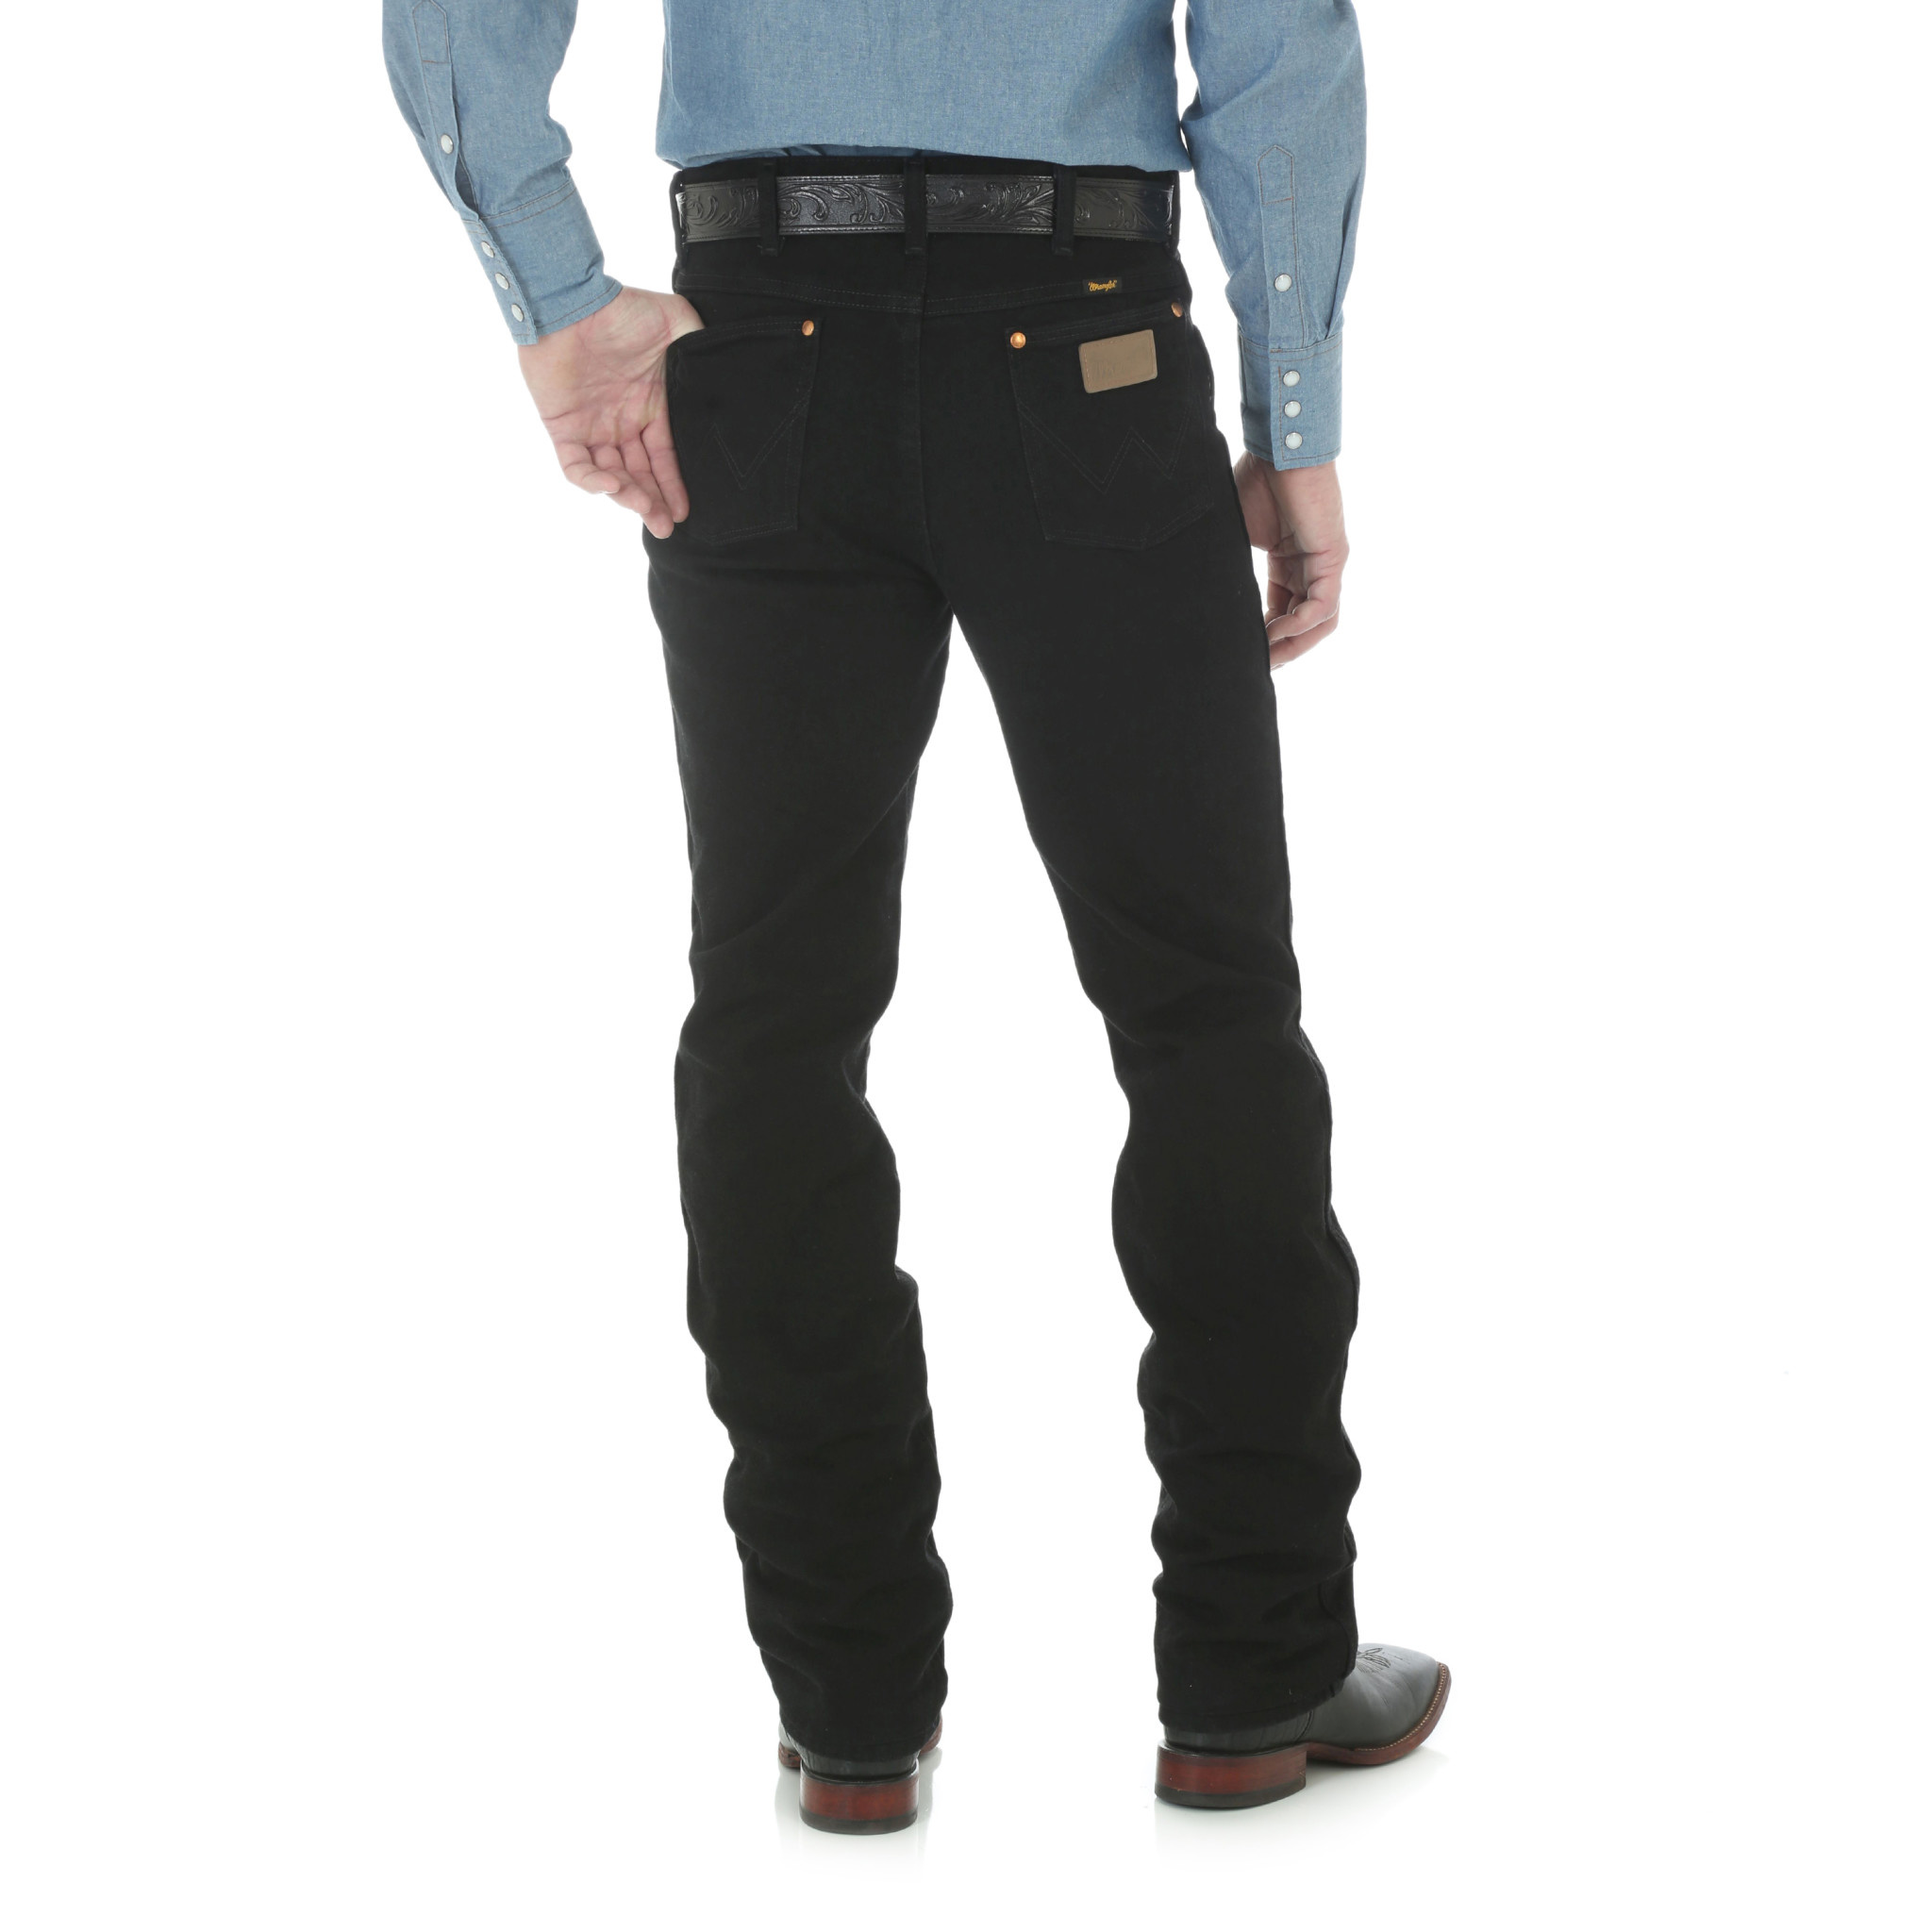 Cowboy Cut Slim Fit 936 Black Jeans - Frontier Western Shop